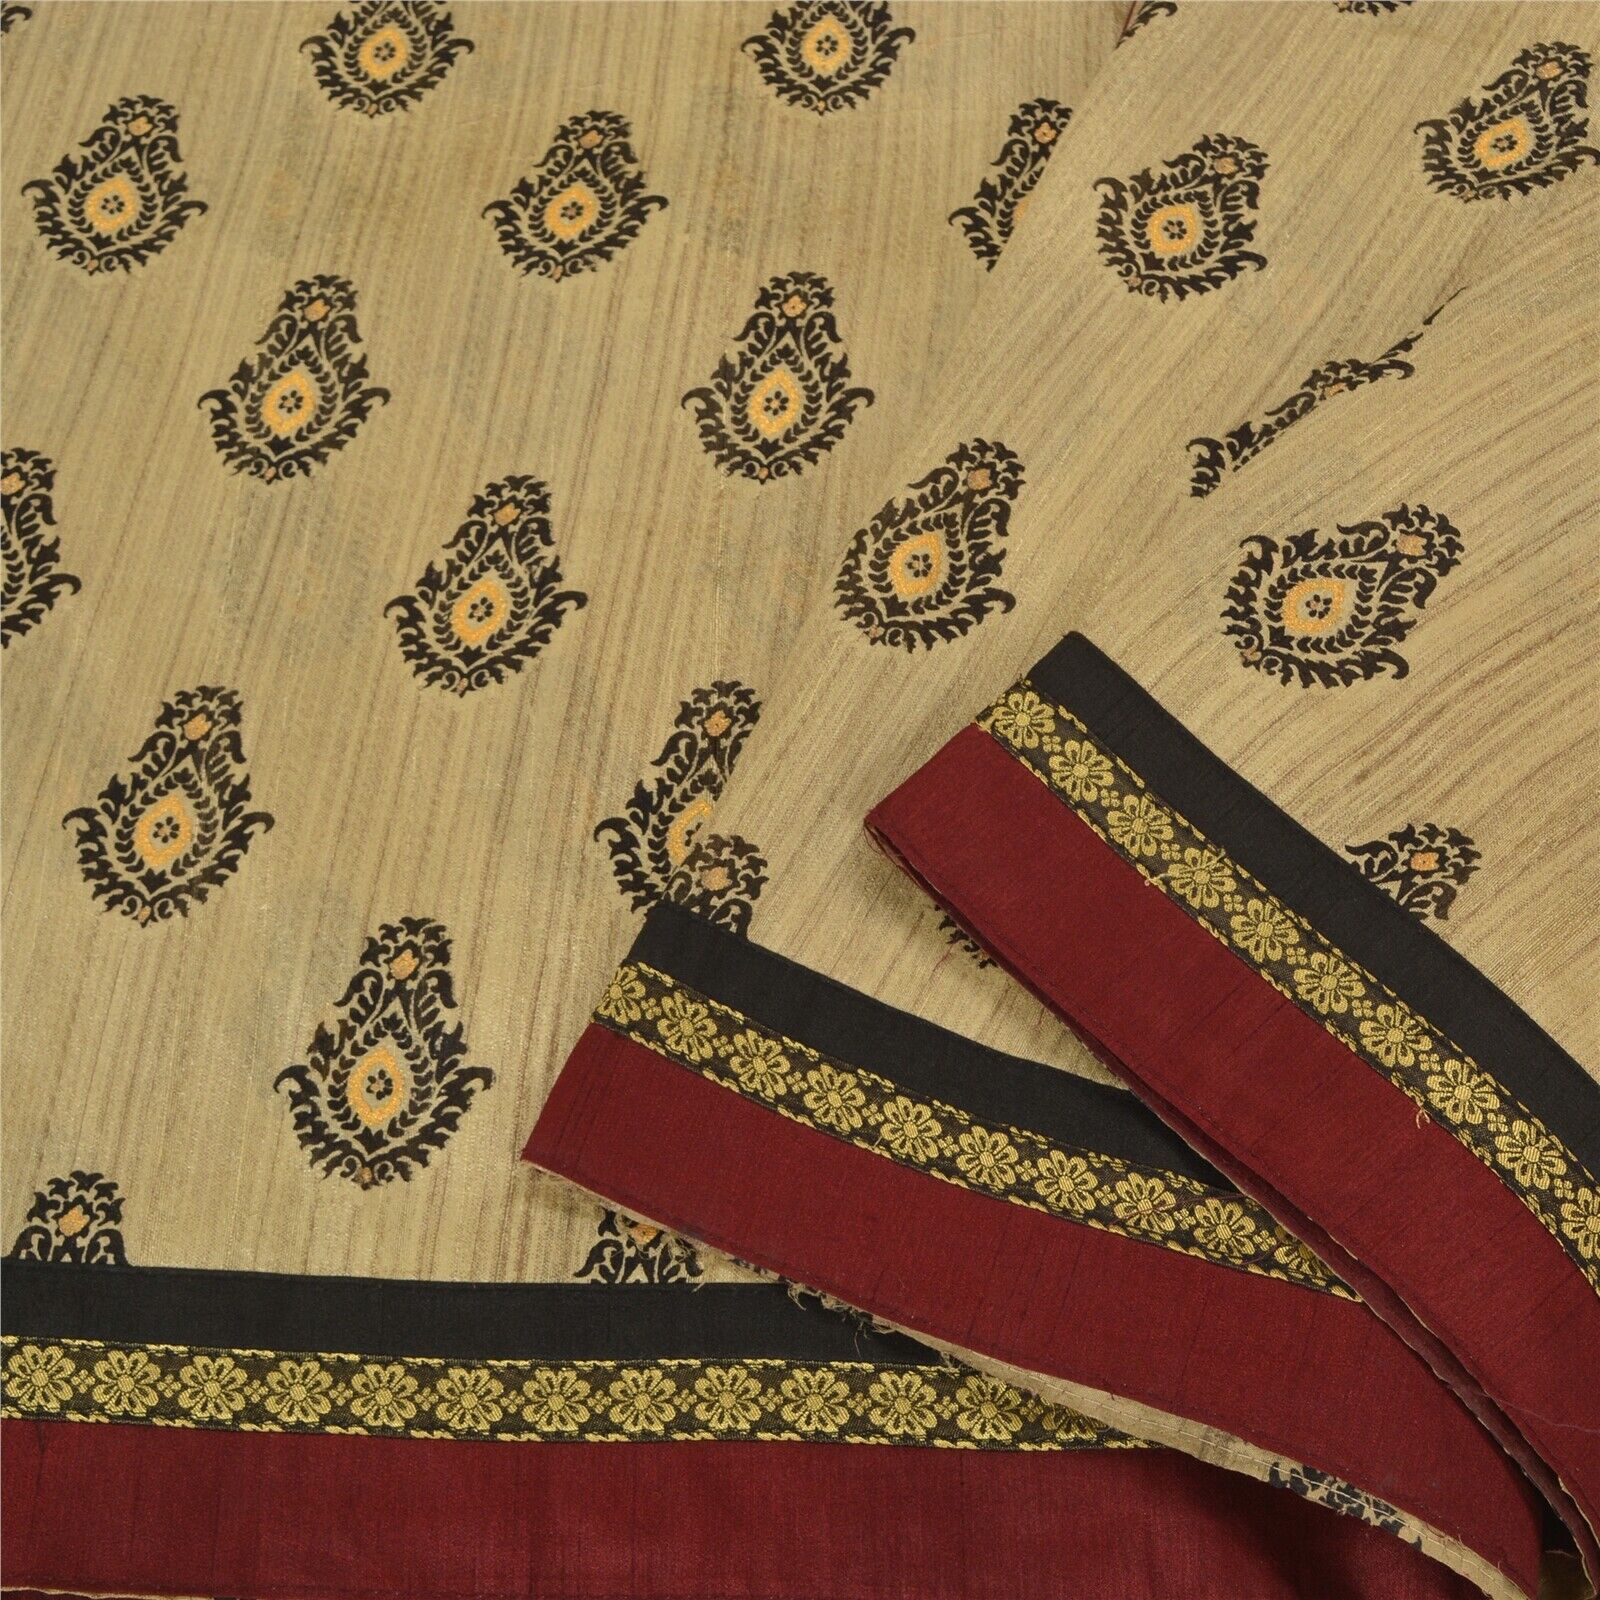 Sanskriti Vintage Ivory Sarees Art Silk Embroidered Hand-Block Print Sari Fabric